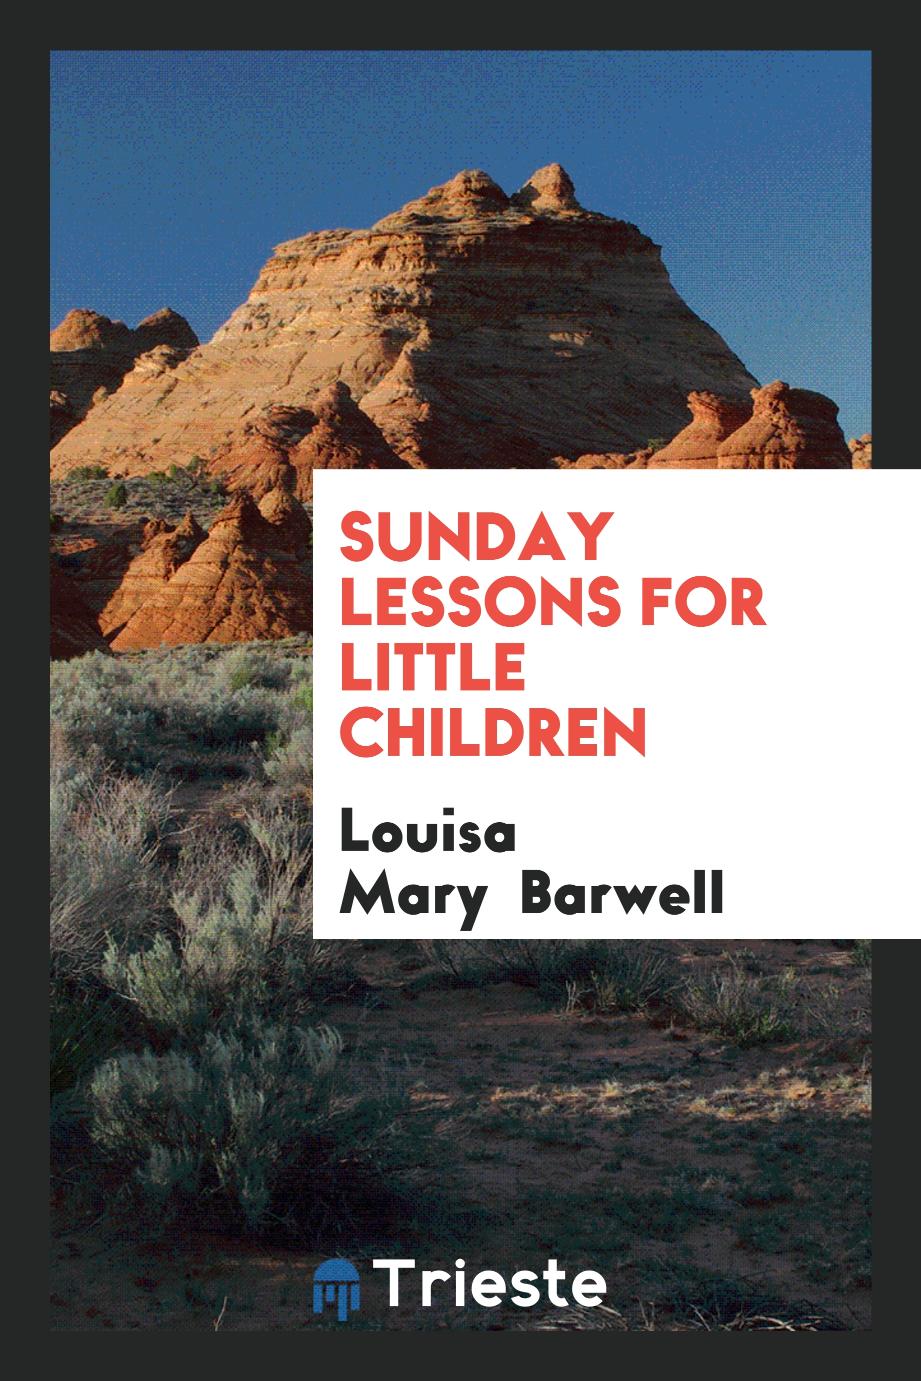 Sunday lessons for little children